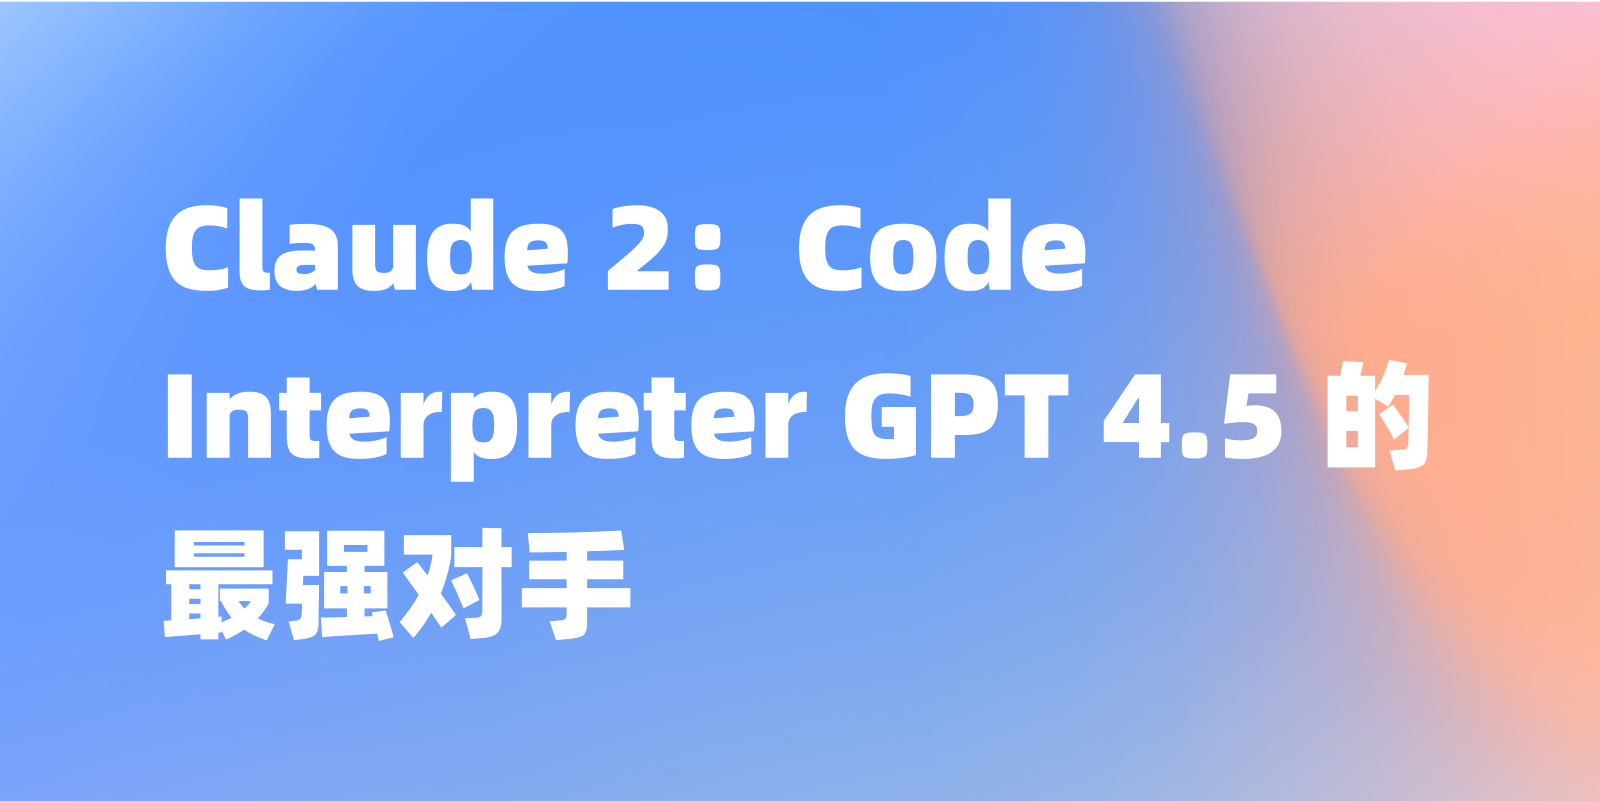 Code Interpreter GPT 4.5 的优秀竞品——Claude 2